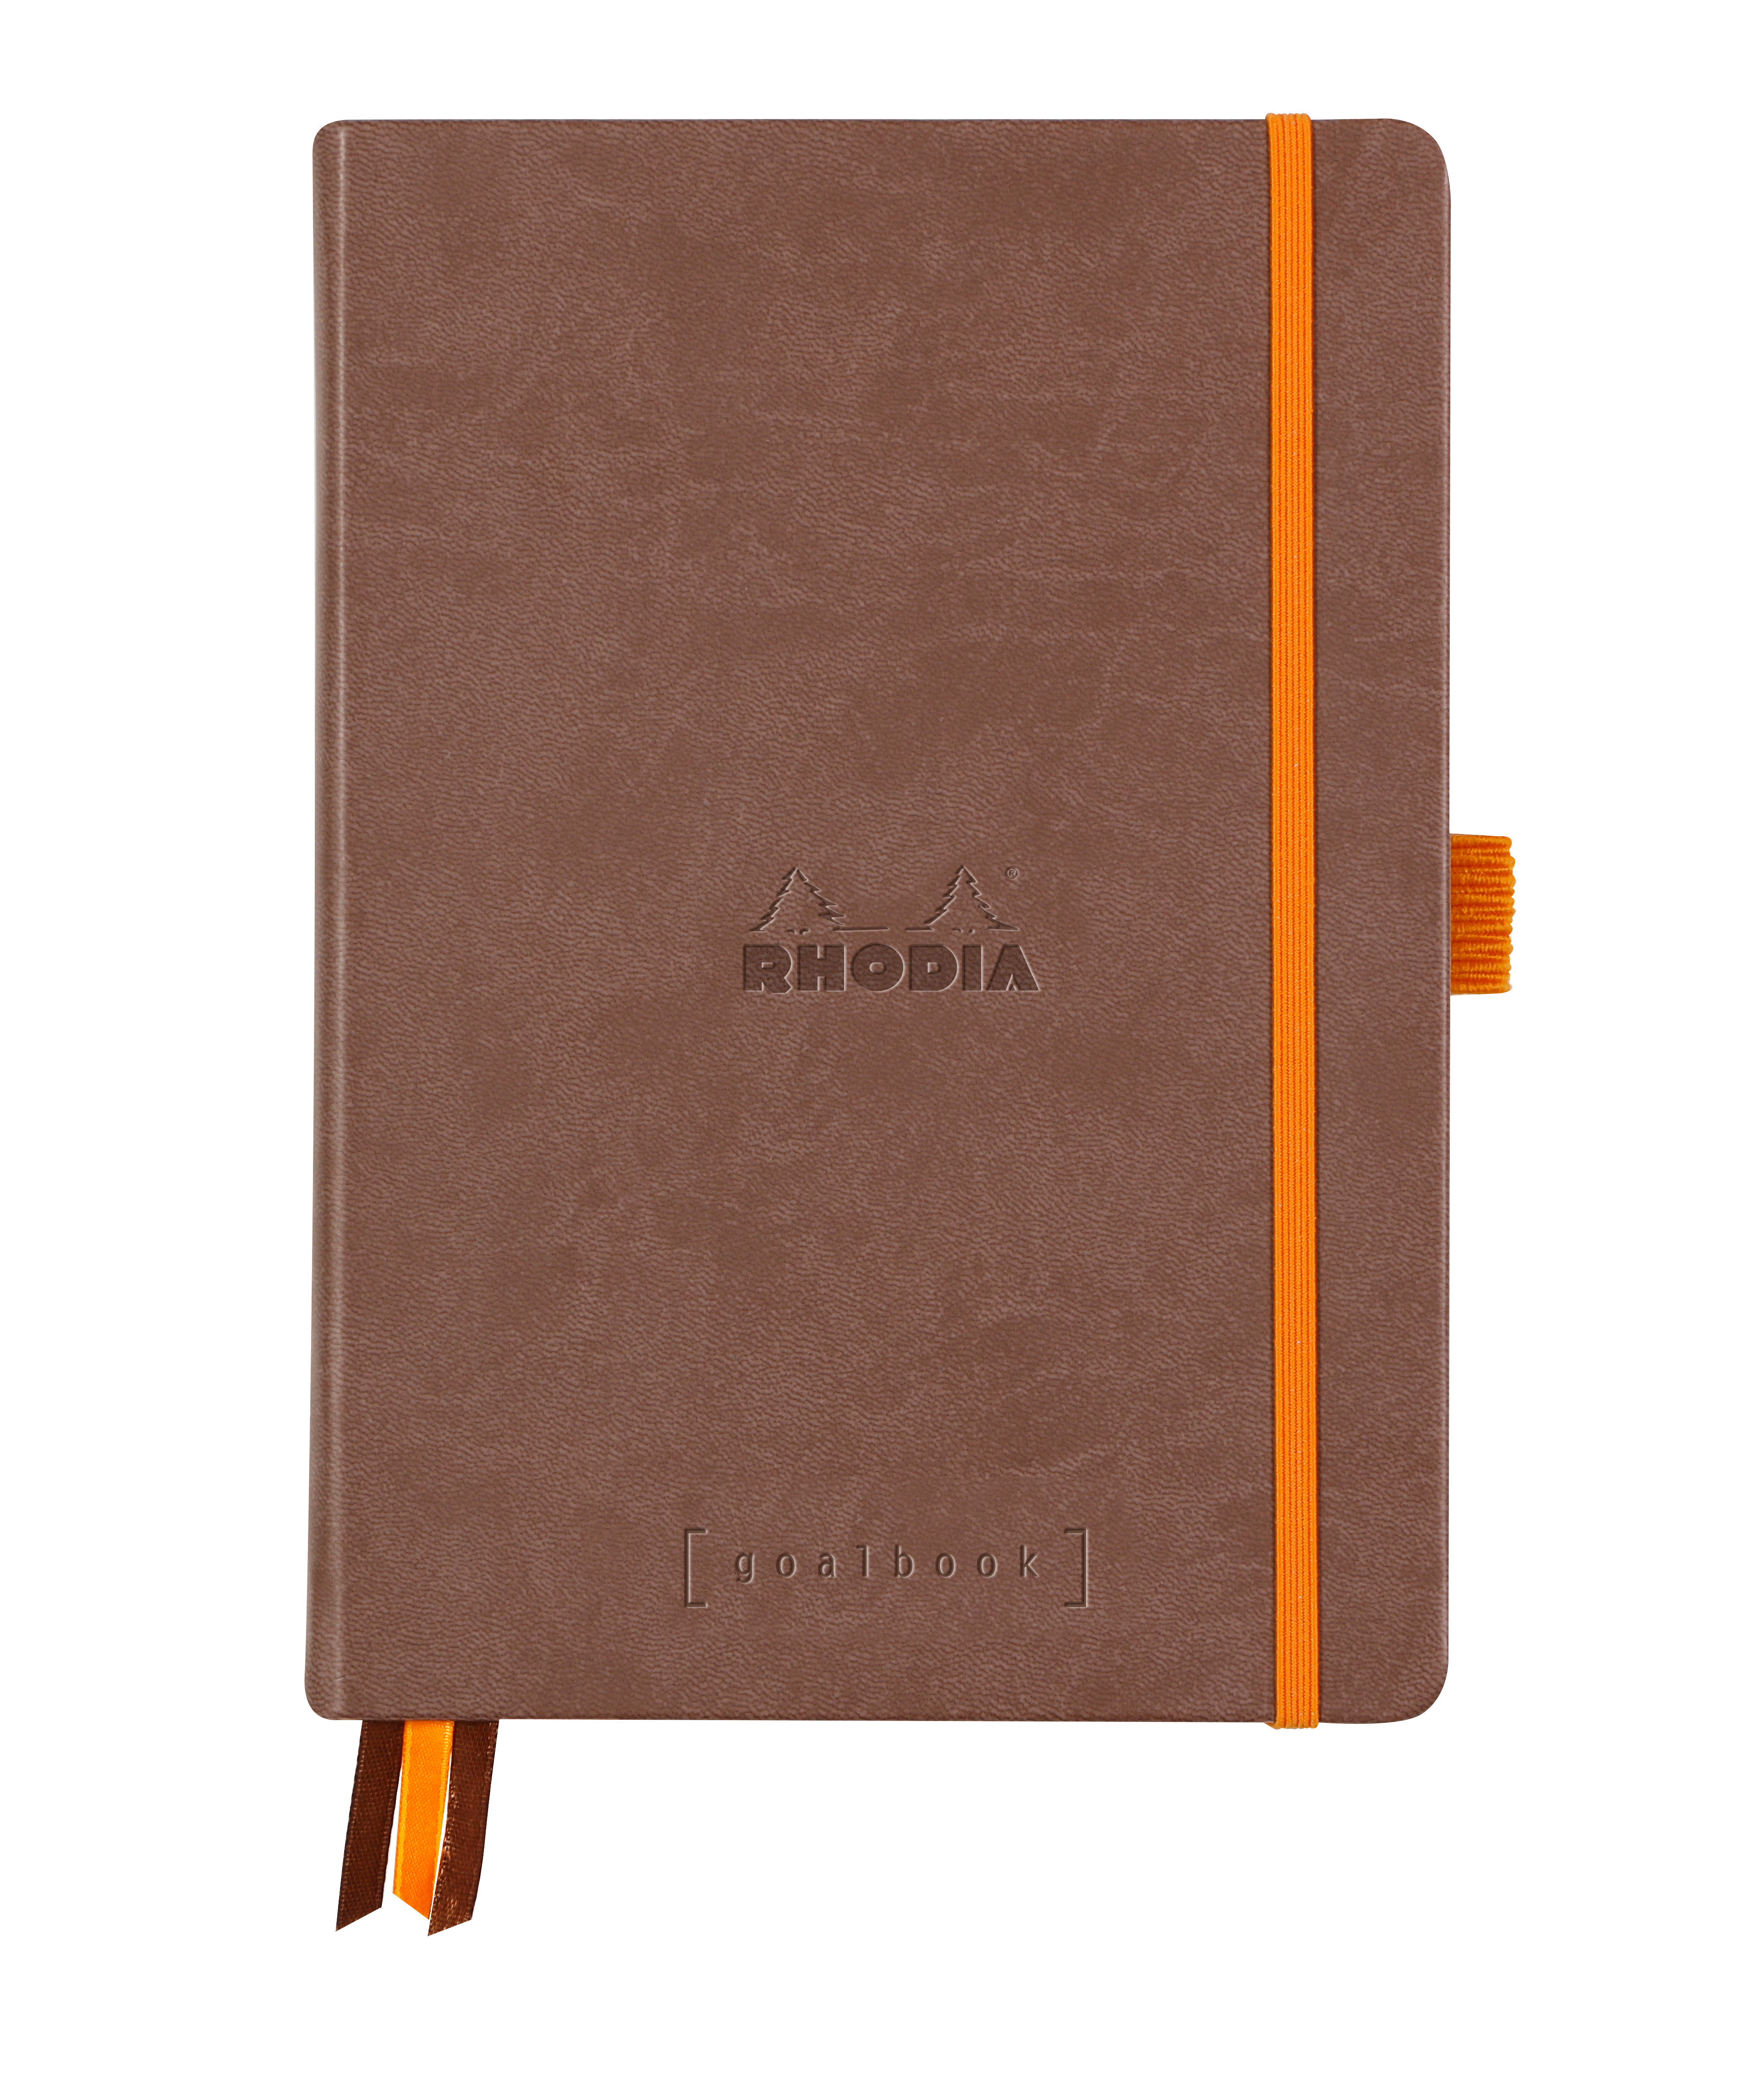 RHODIA Goalbook Carnet A5 118572C Hardcover brun chocolat 240 f. Hardcover brun chocolat 240 f.